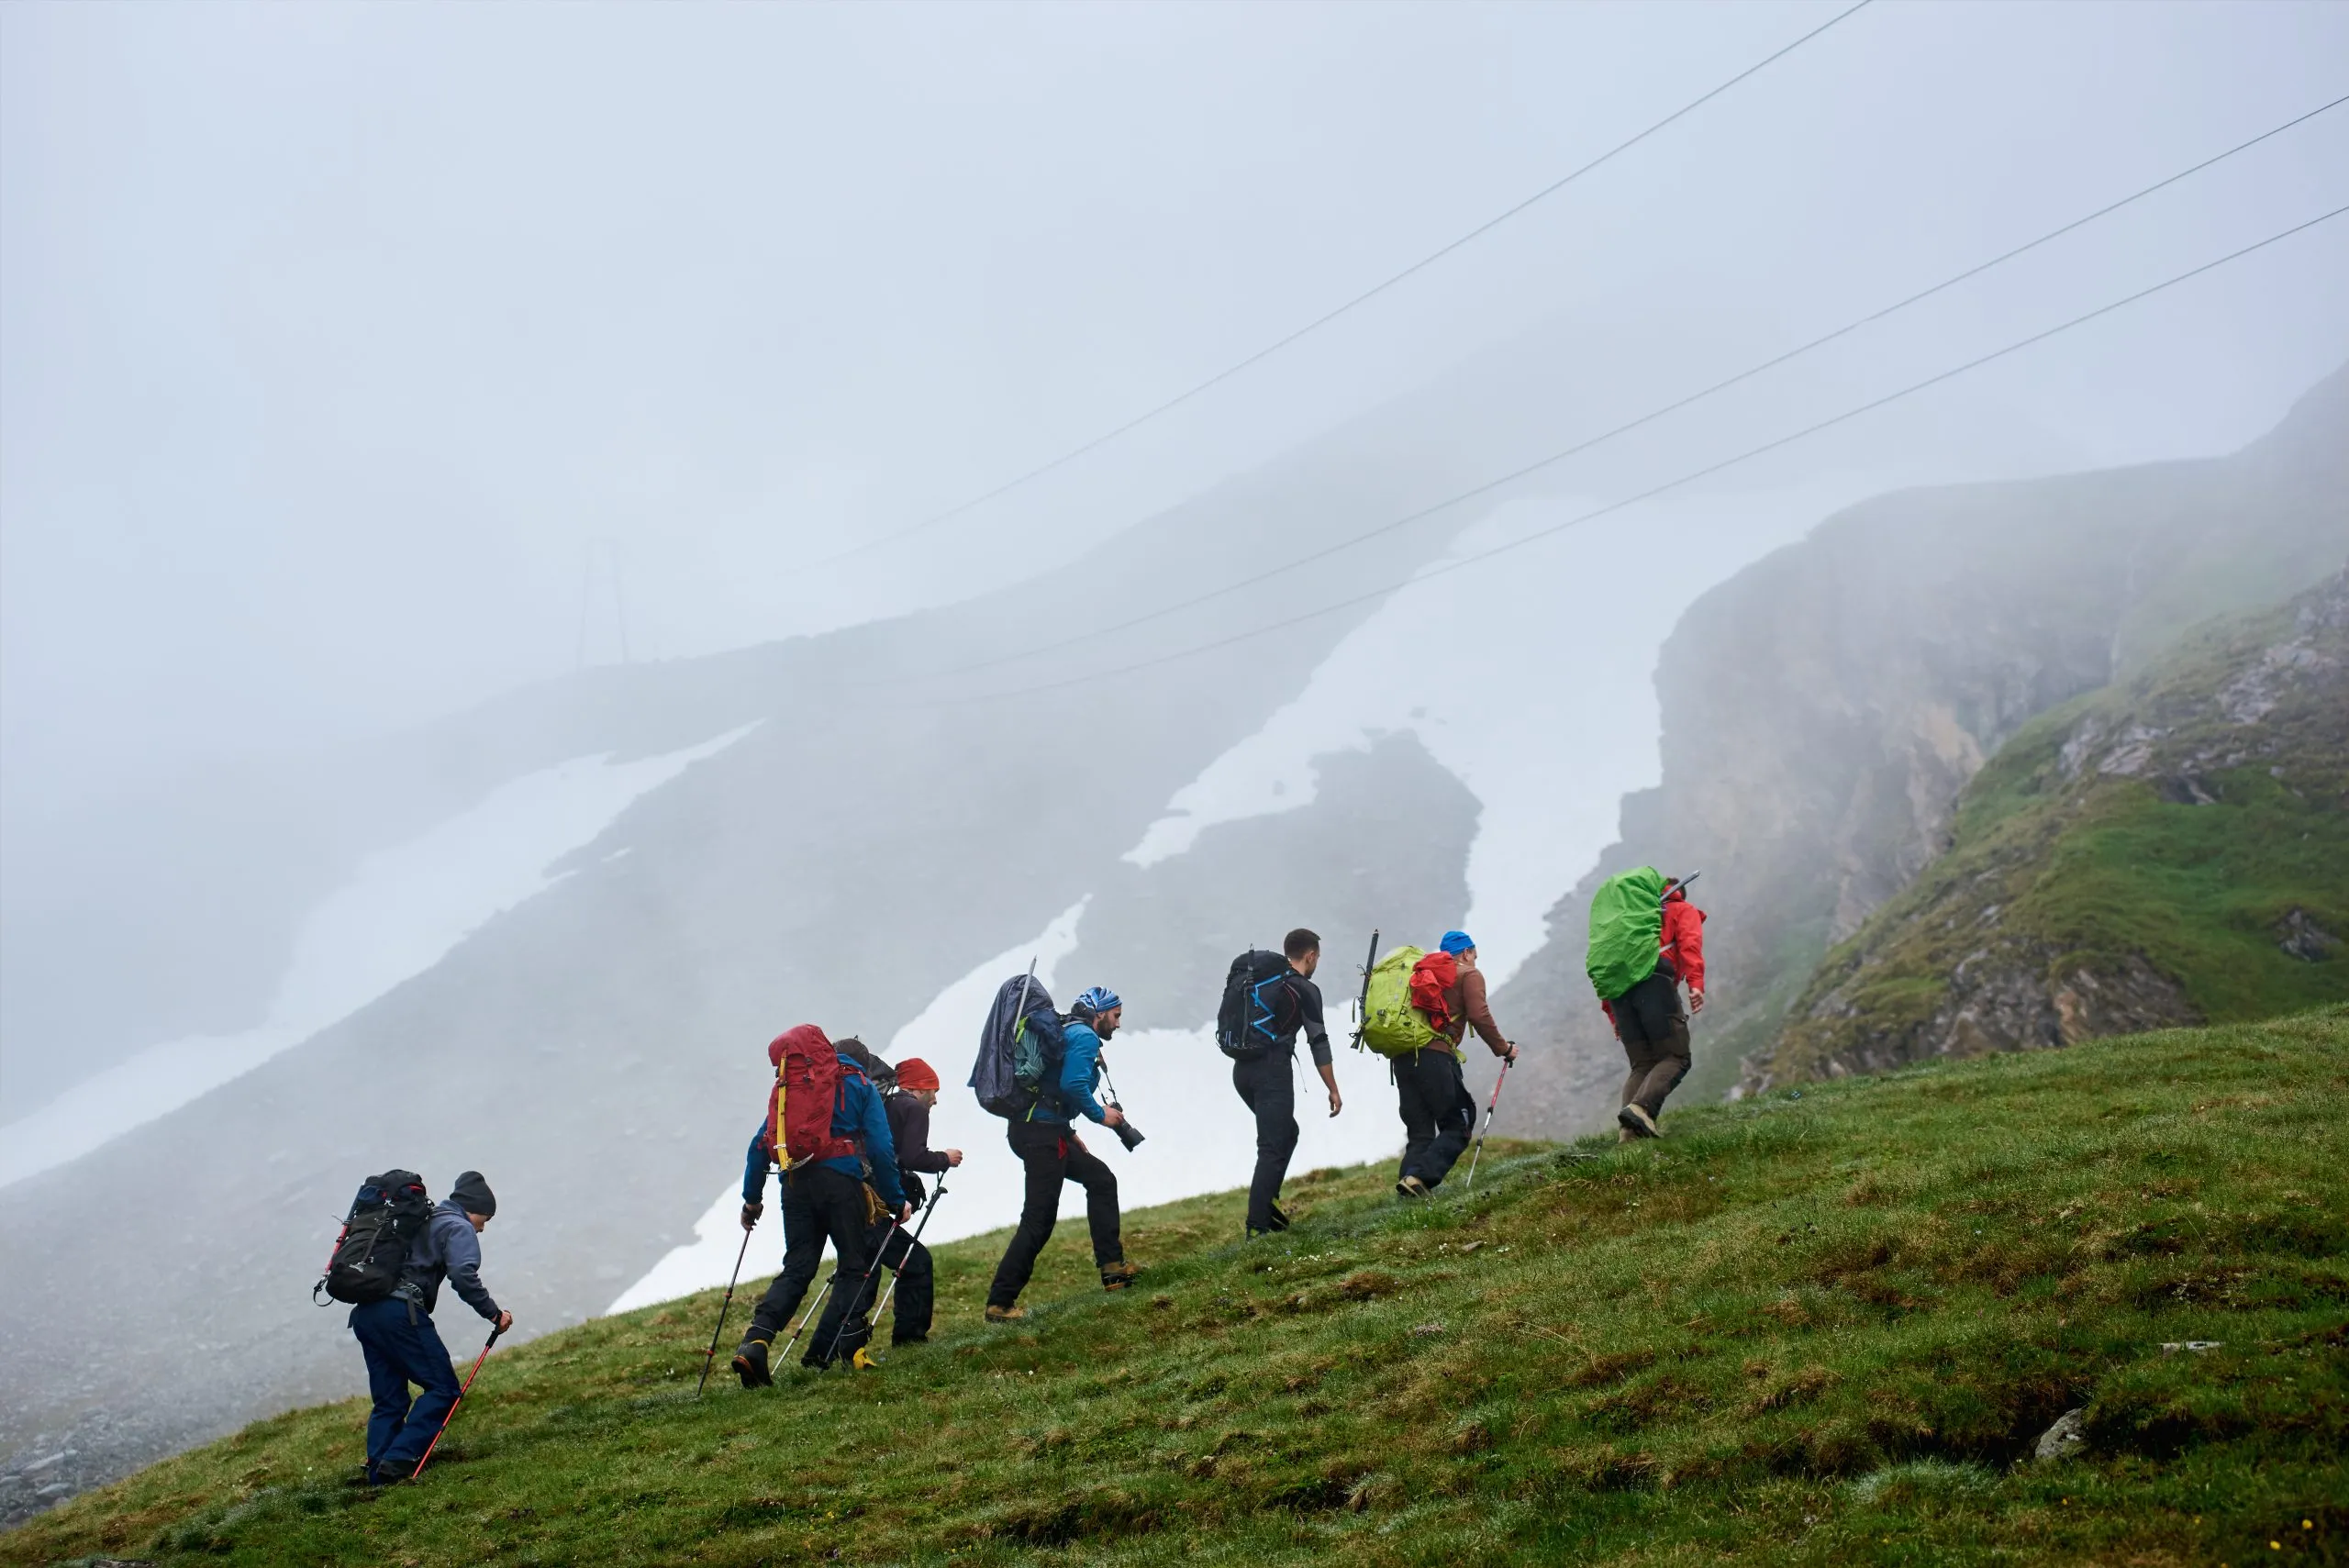 Pohled zezadu na muže s batohy, kteří stoupají na travnatý kopec. Mladí turisté kráčející do kopce v horách s mlžným útesem v pozadí. Koncept pěší turistiky, cestování a putování s batohem na zádech.